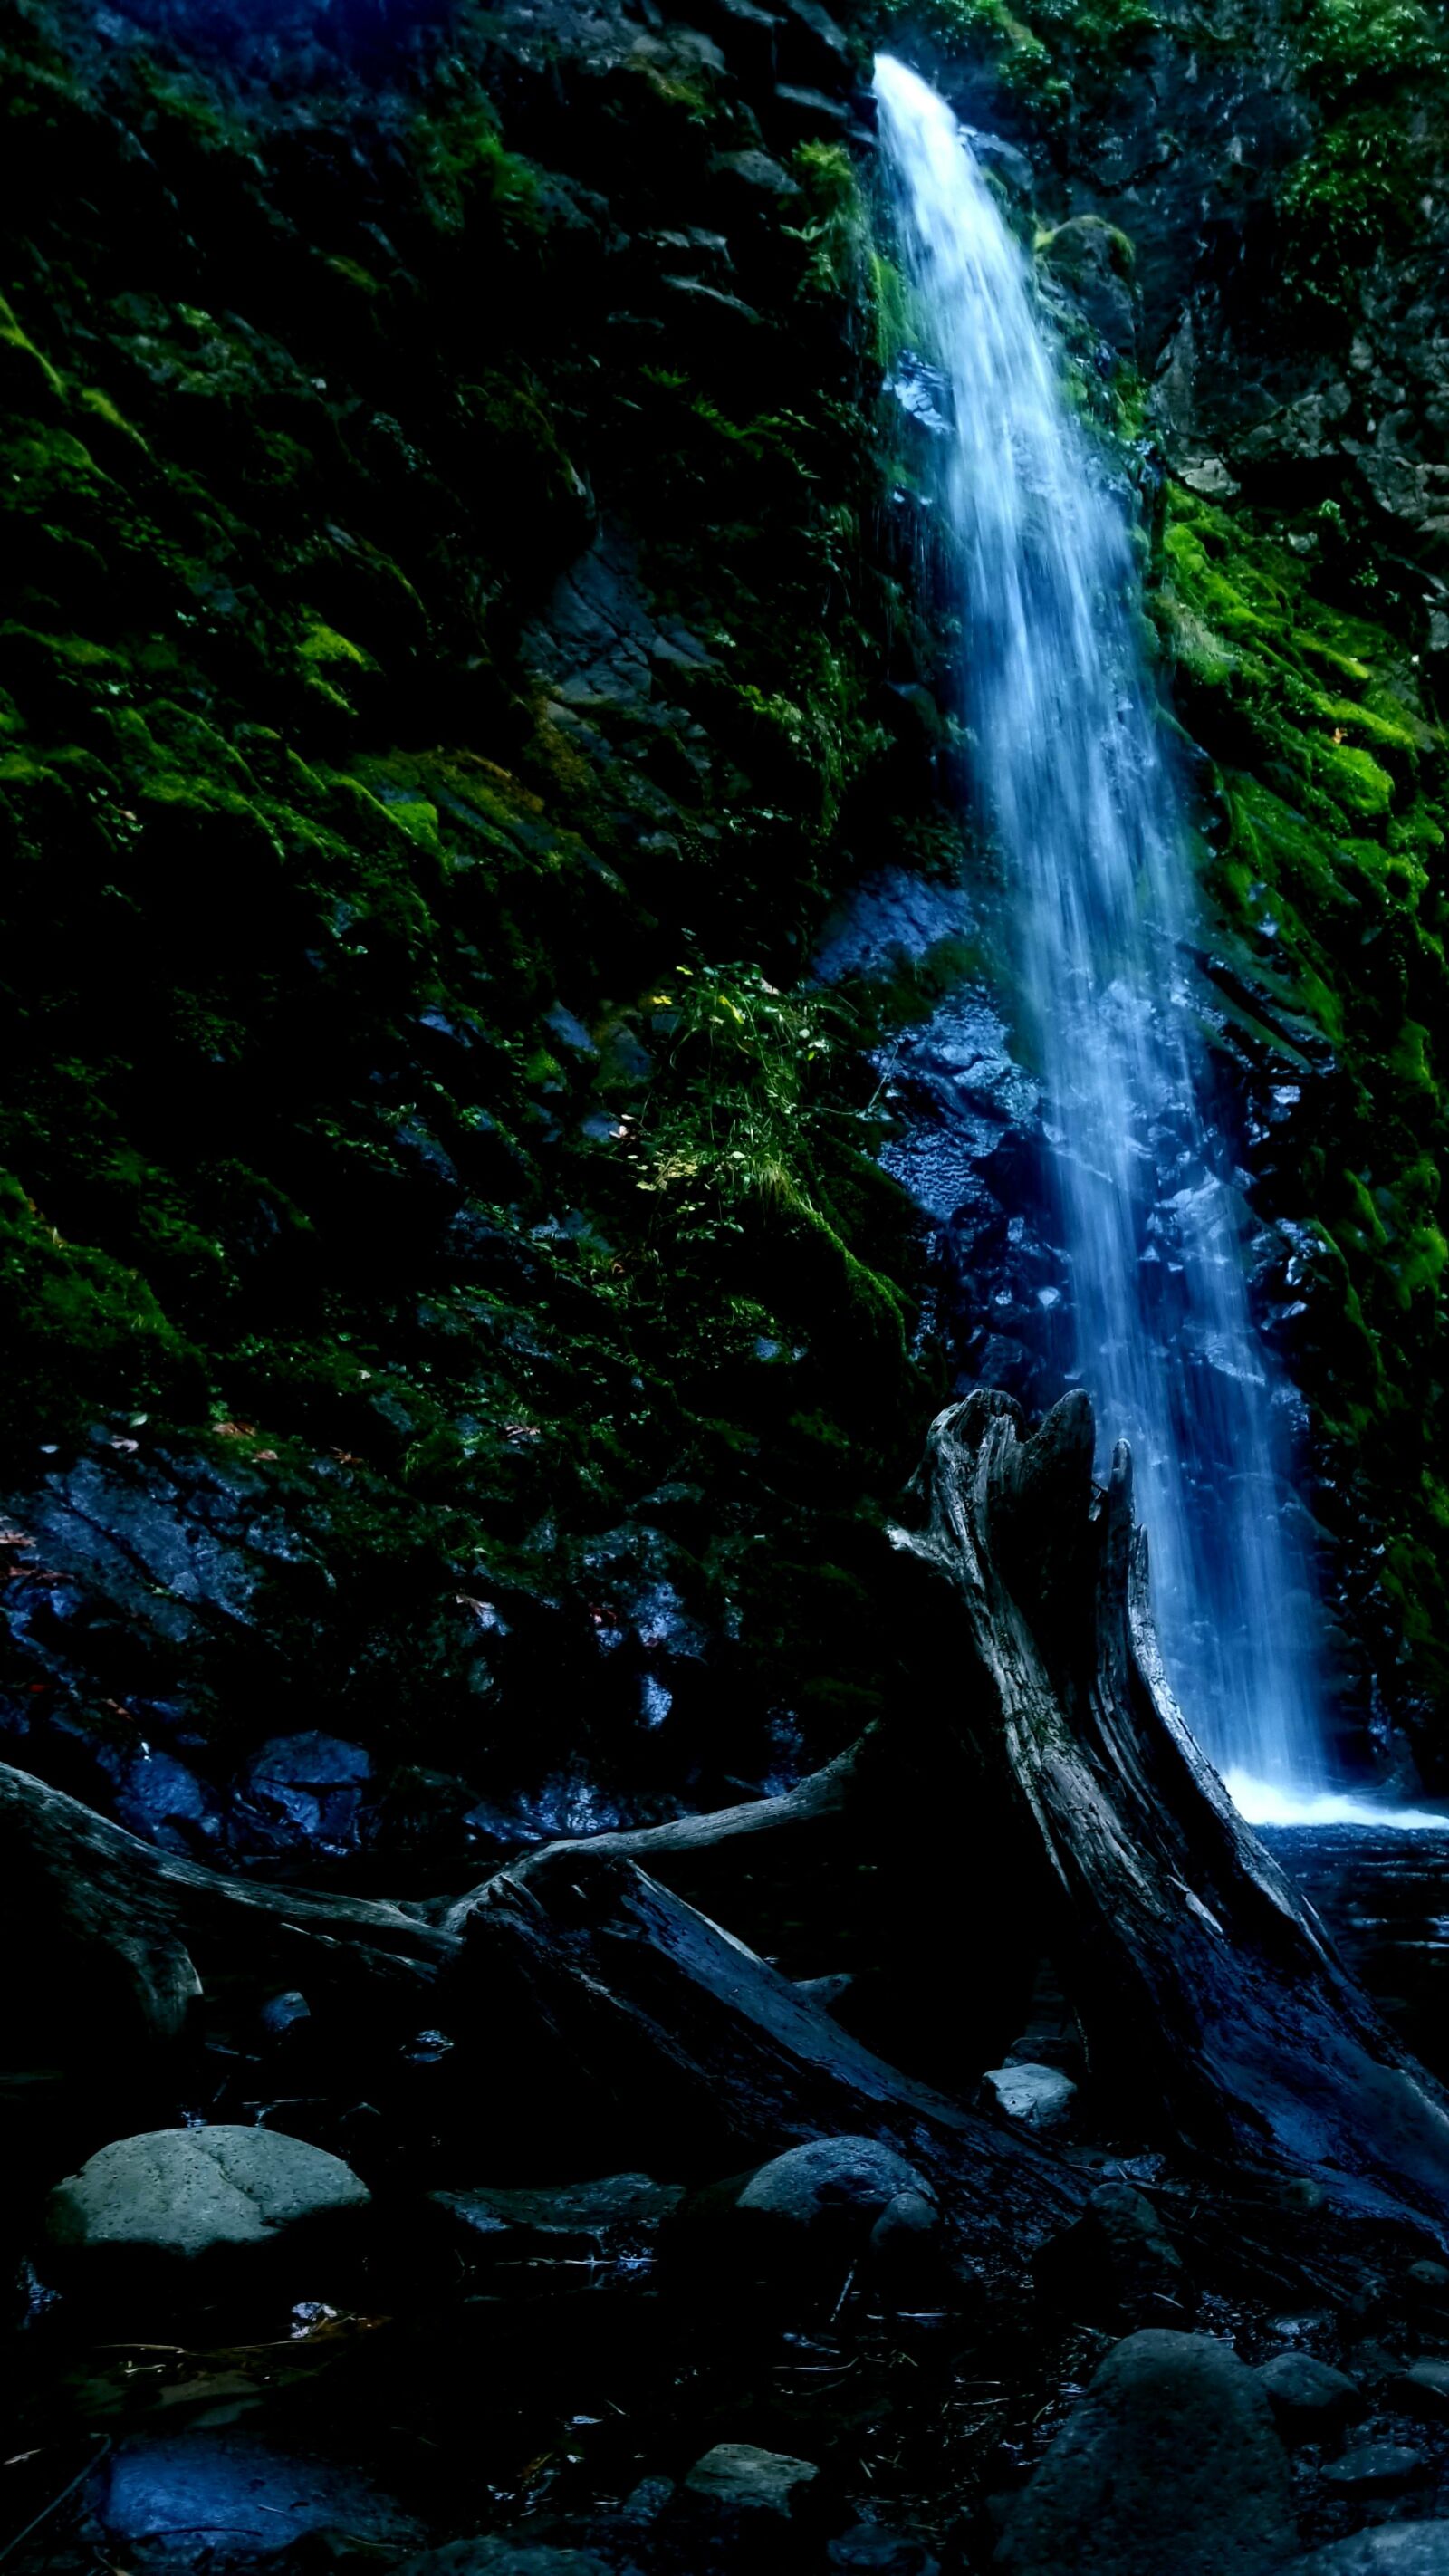 Samsung Galaxy Note9 sample photo. Fall creek falls, falls photography